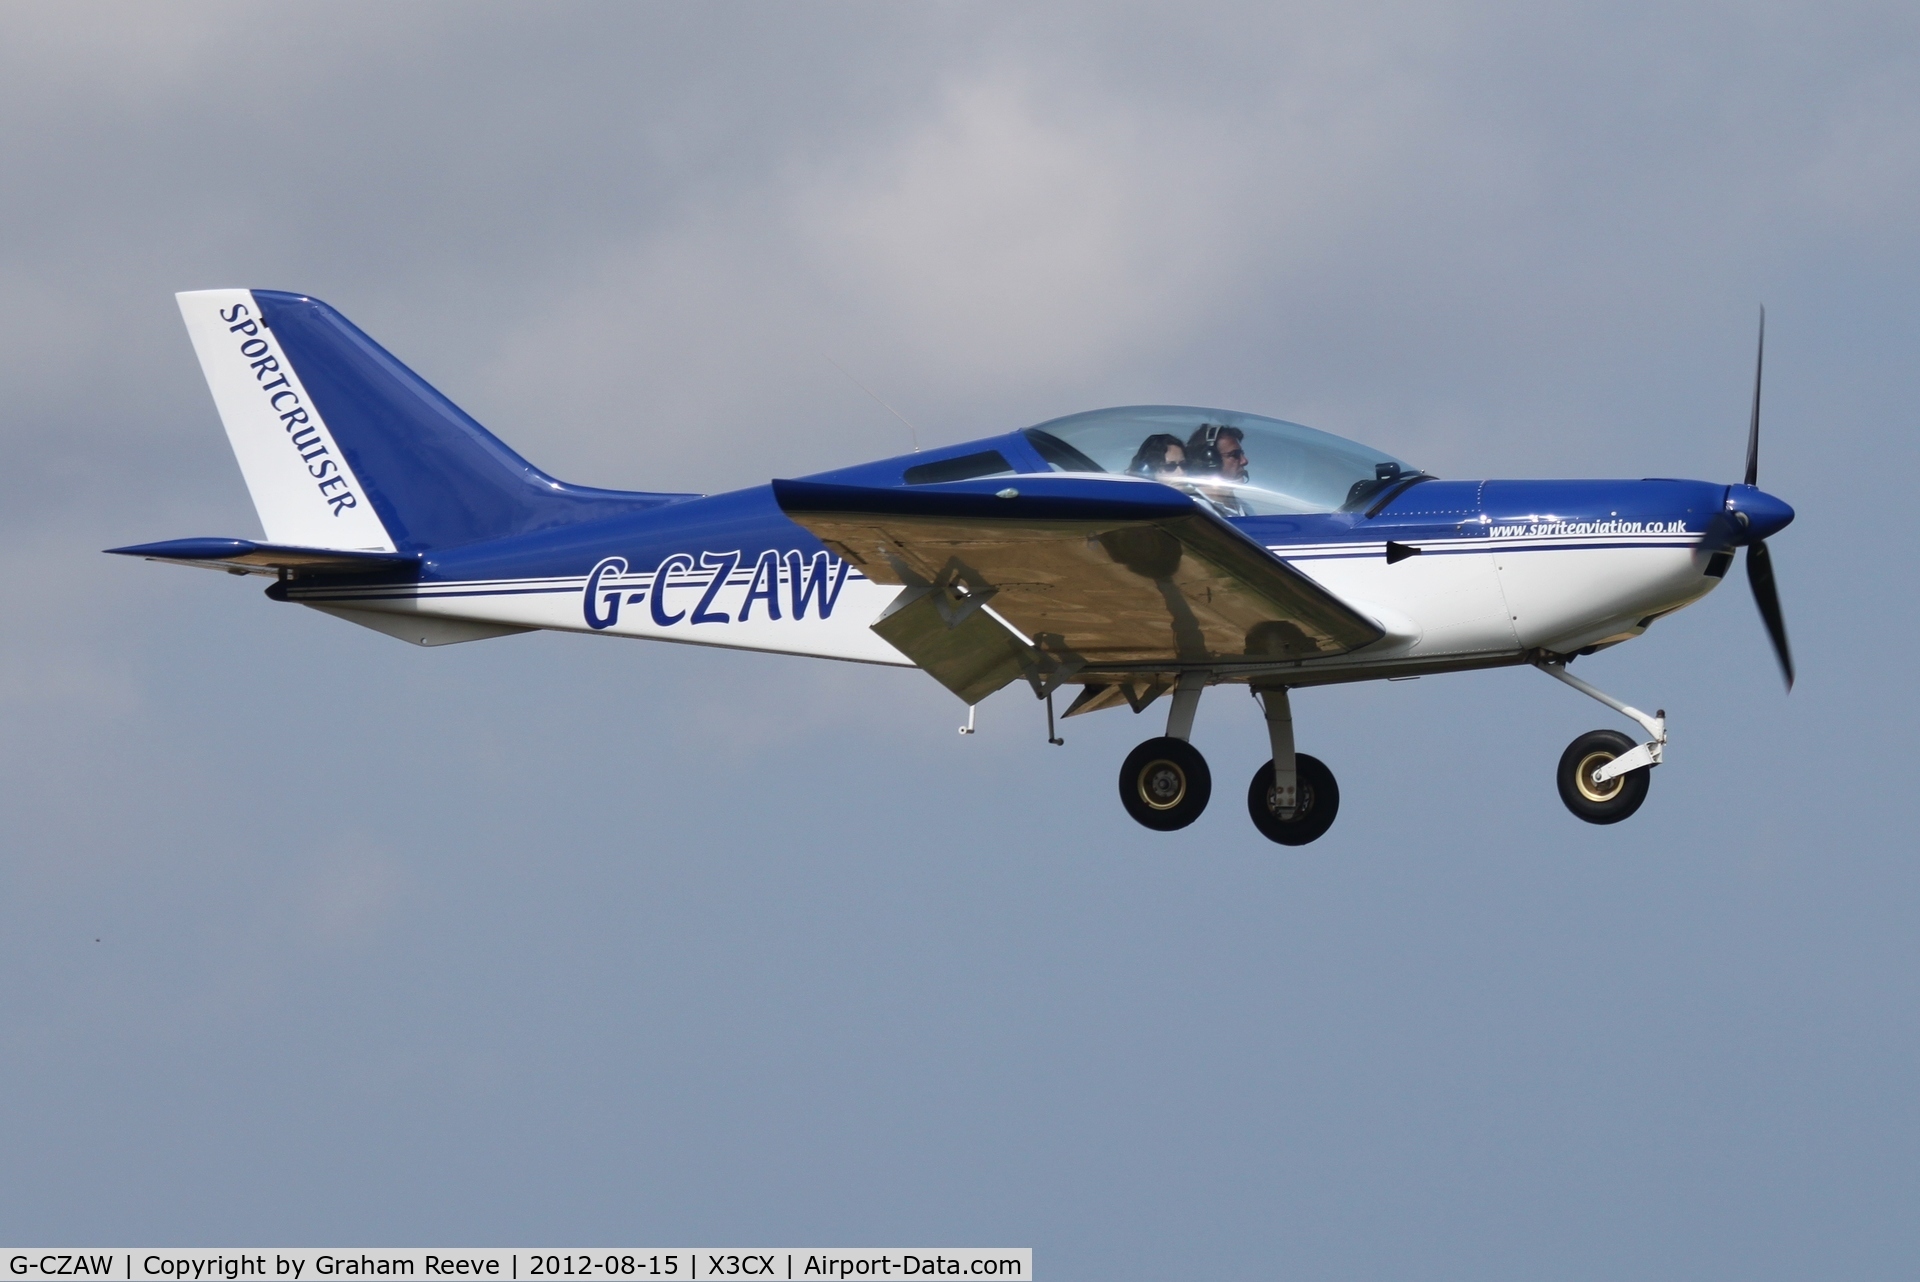 G-CZAW, 2006 CZAW SportCruiser C/N PFA 338-14542, About to land.